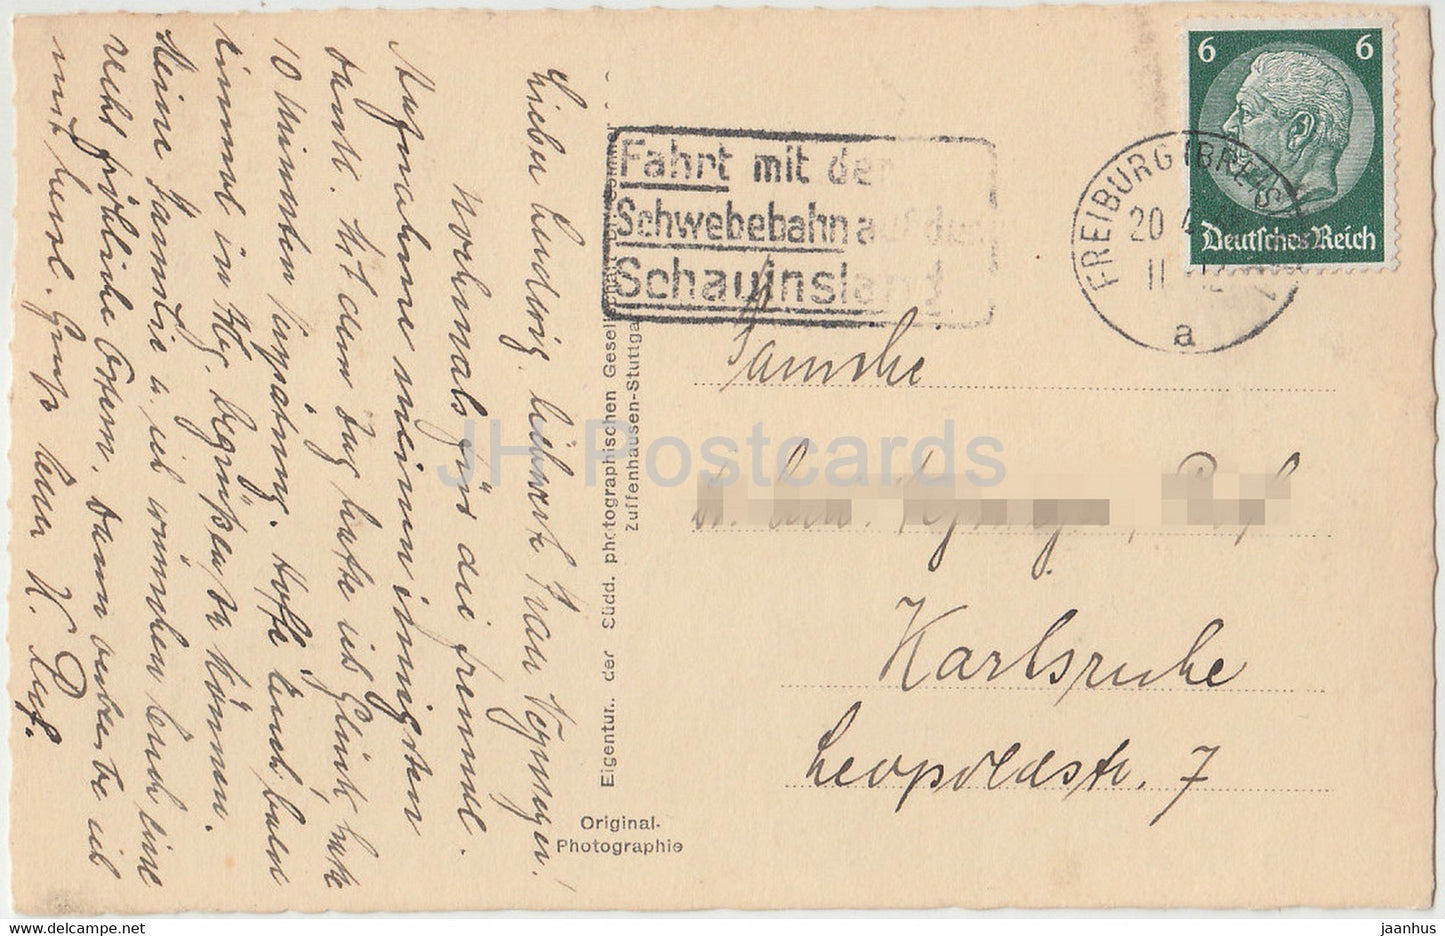 Freiburg i B - 3634 - carte postale ancienne - 1943 - Allemagne - utilisé